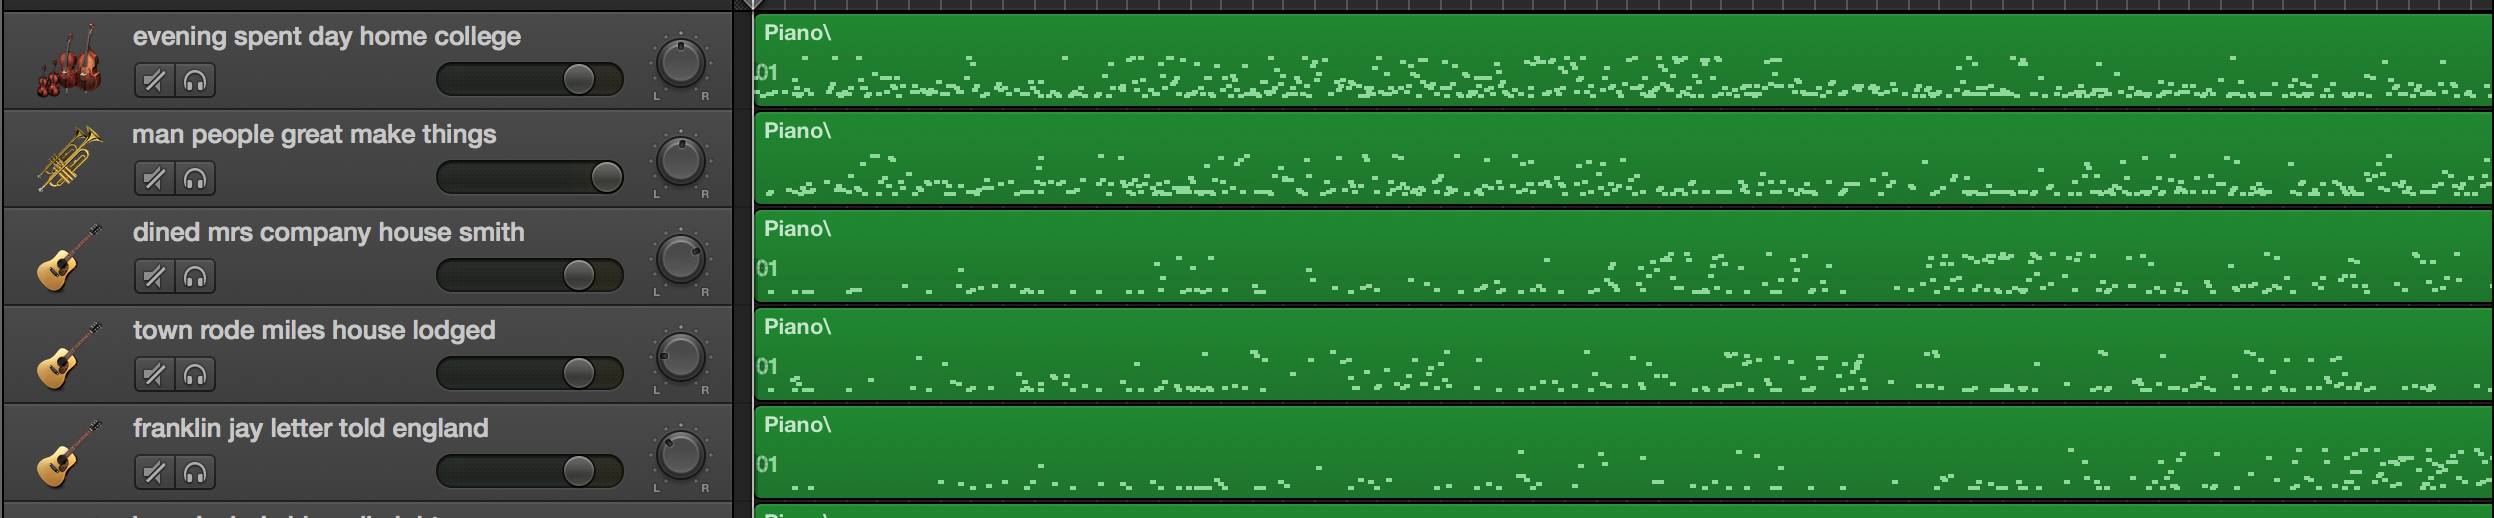 Captura de tela do Garageband, onde os ficheiros MIDI são tópicos sonorizados do Diário de John Adams. Na interface do Garageband (o LMMS é semelhante), cada ficheiro MIDI é arrastado e solto no lugar. A instrumentação para cada ficheiro MIDI (ou seja, trilha) pode ser selecionada nos menus do Garageband. Os rótulos de cada faixa foram alterados aqui para refletir as palavras-chave em cada tópico. A área verde à direita representa uma visualização das notas em cada faixa. Você pode ver esta interface em ação e ouvir a música [aqui](https://youtu.be/ikqRXtI3JeA) (em inglês)